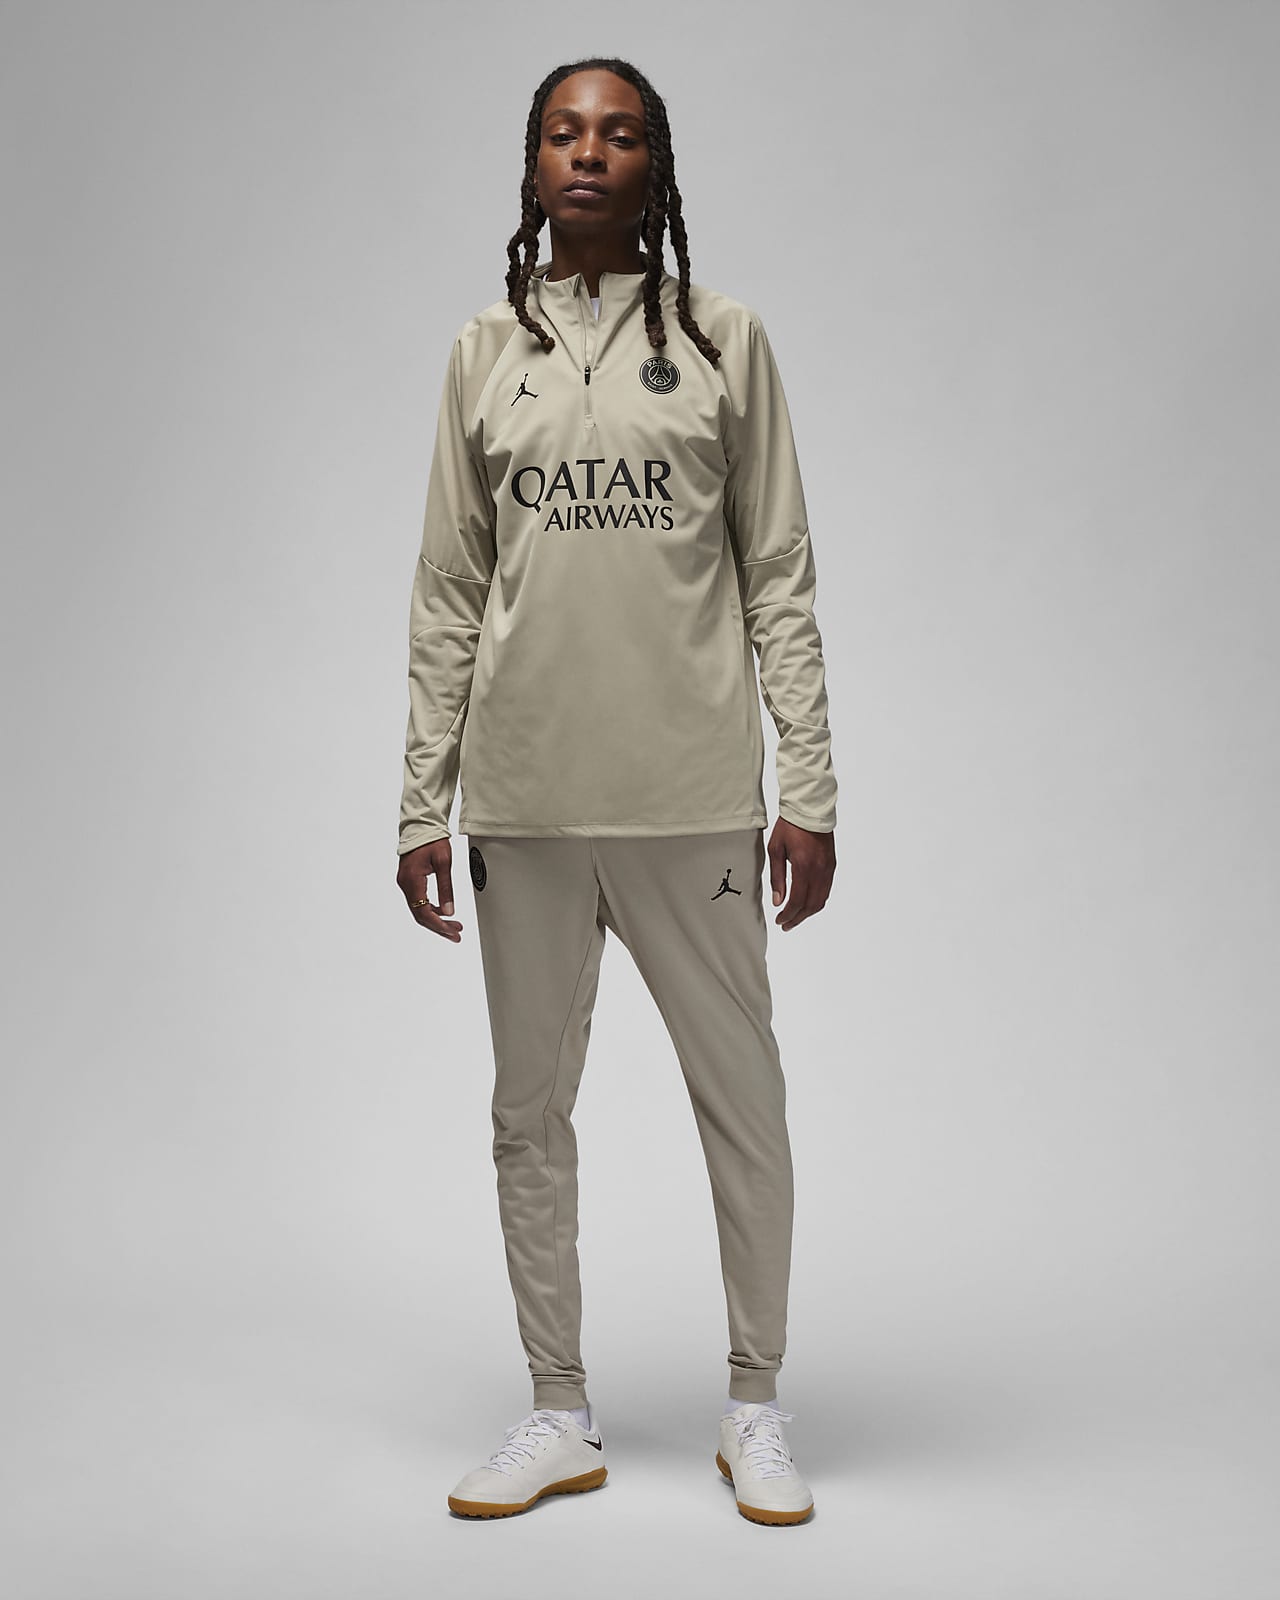 Invictos on X: La nueva camiseta de visitante del PSG. Las colecciones que  hacen con la marca Jordan NUNCA fallan. IMPONENTE.   / X